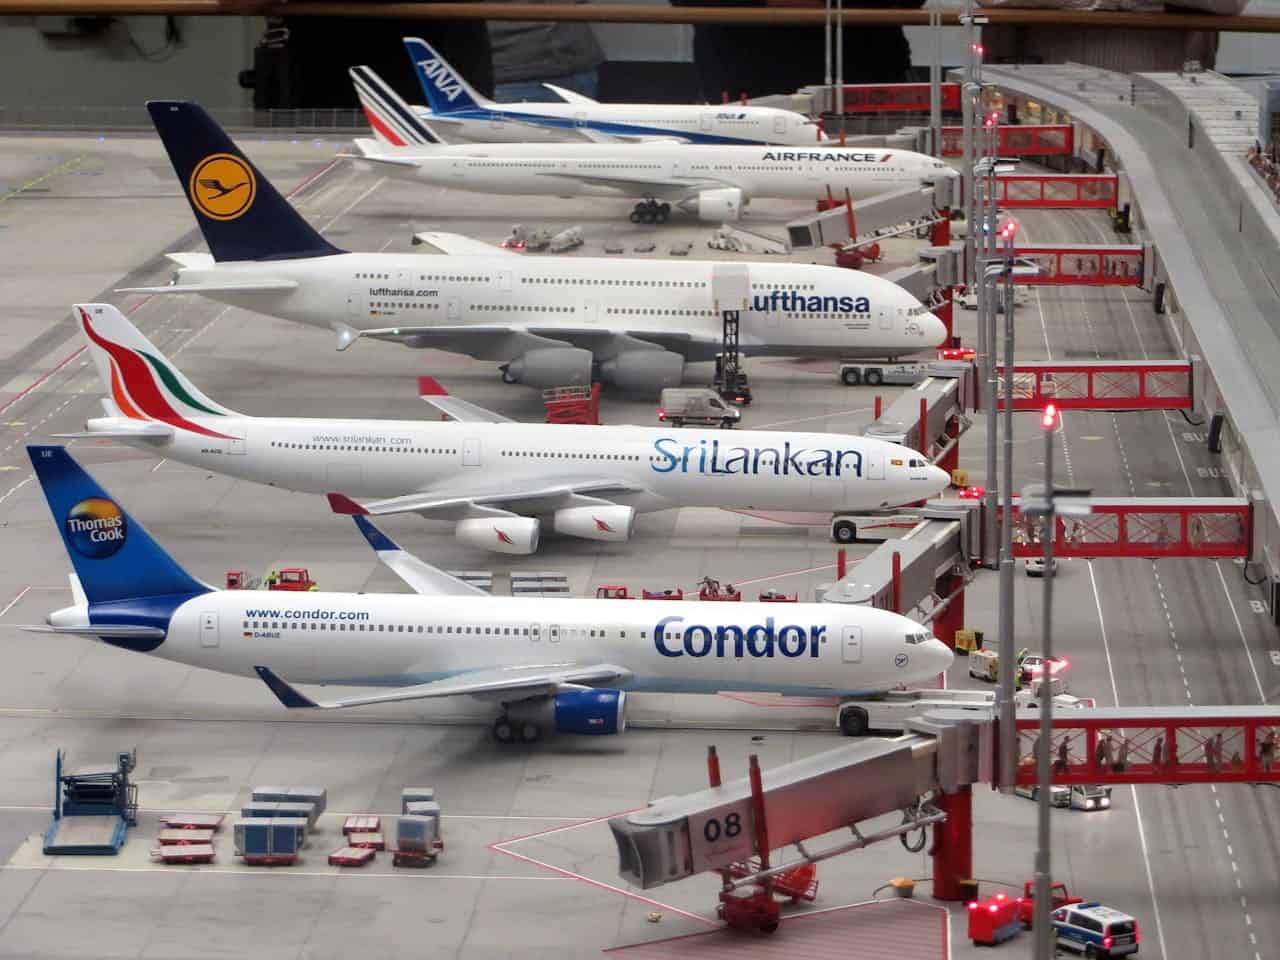 Veja o que acontece com aviões de companhias aéreas falidas. (Foto: Pixabay/Pexels)